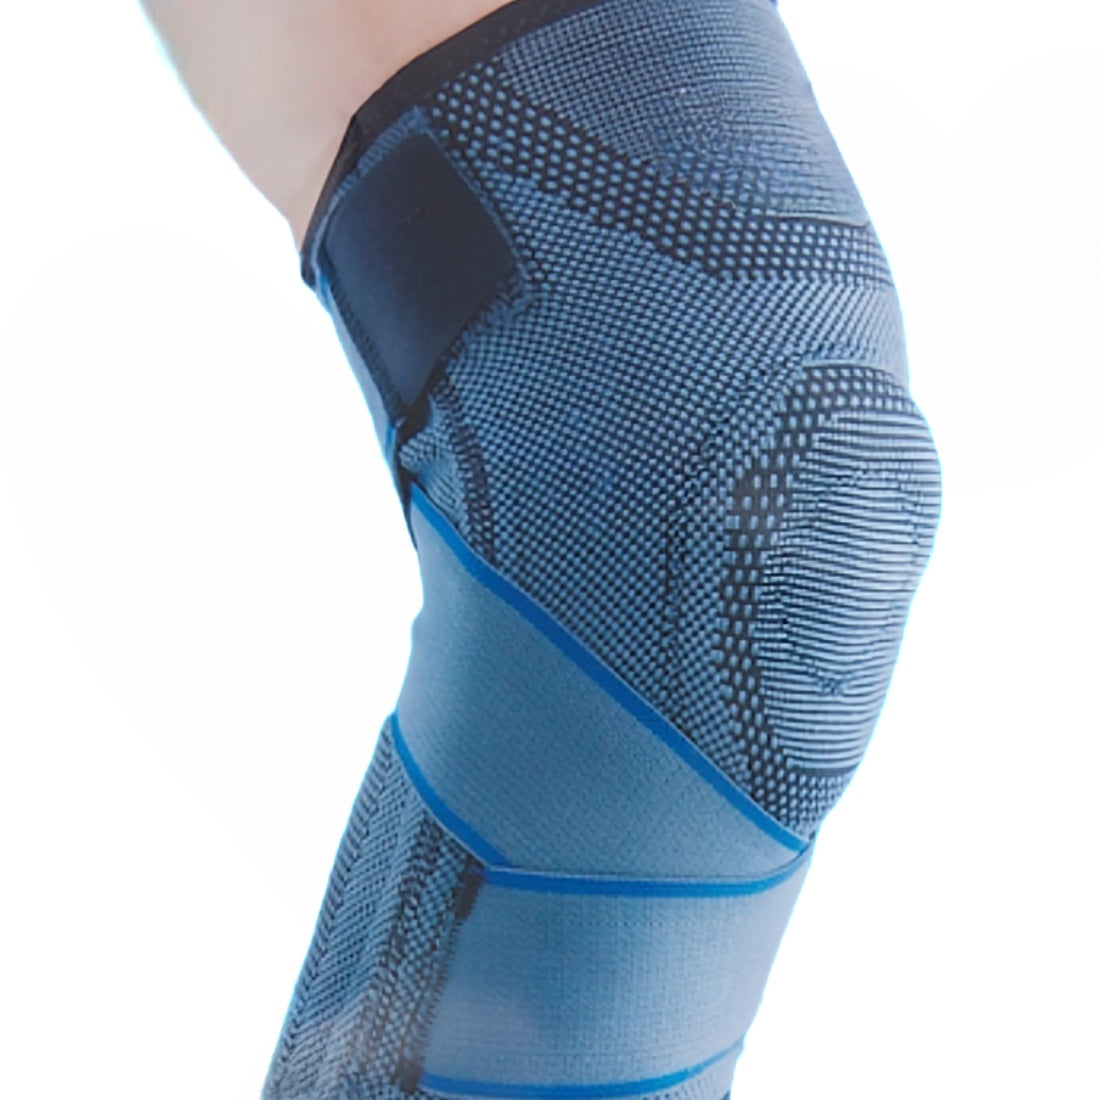 Kompressionsbandage Kniegelenk Meniskus stabilisieren Kniescheibe Knöchelgelenk Muskeln und Gelenke Atmungsaktiv Kompression